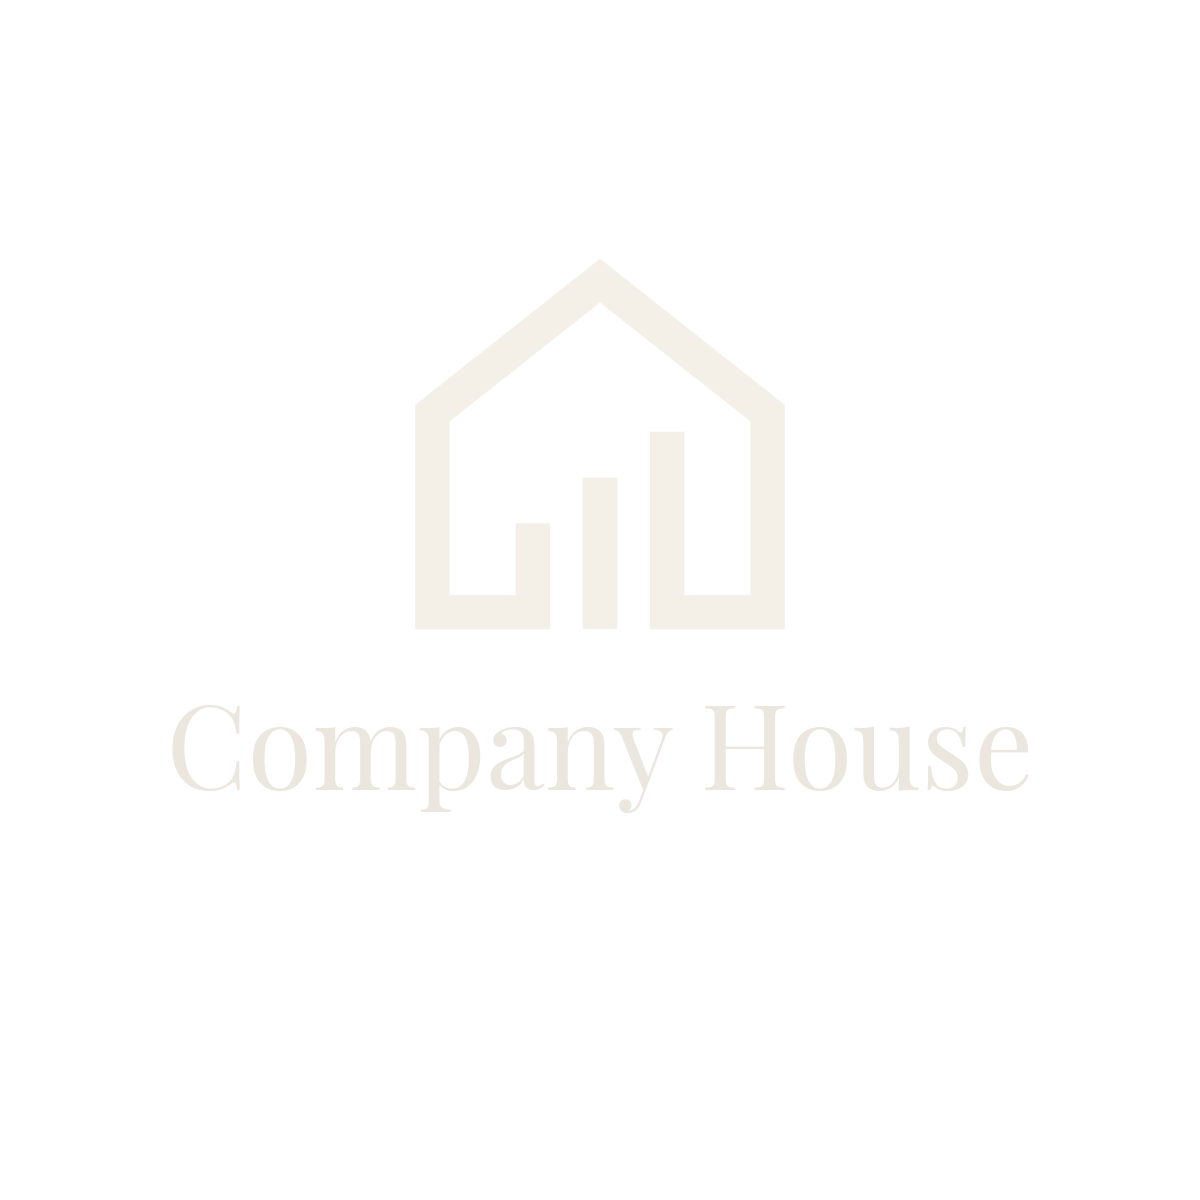 Company House logo